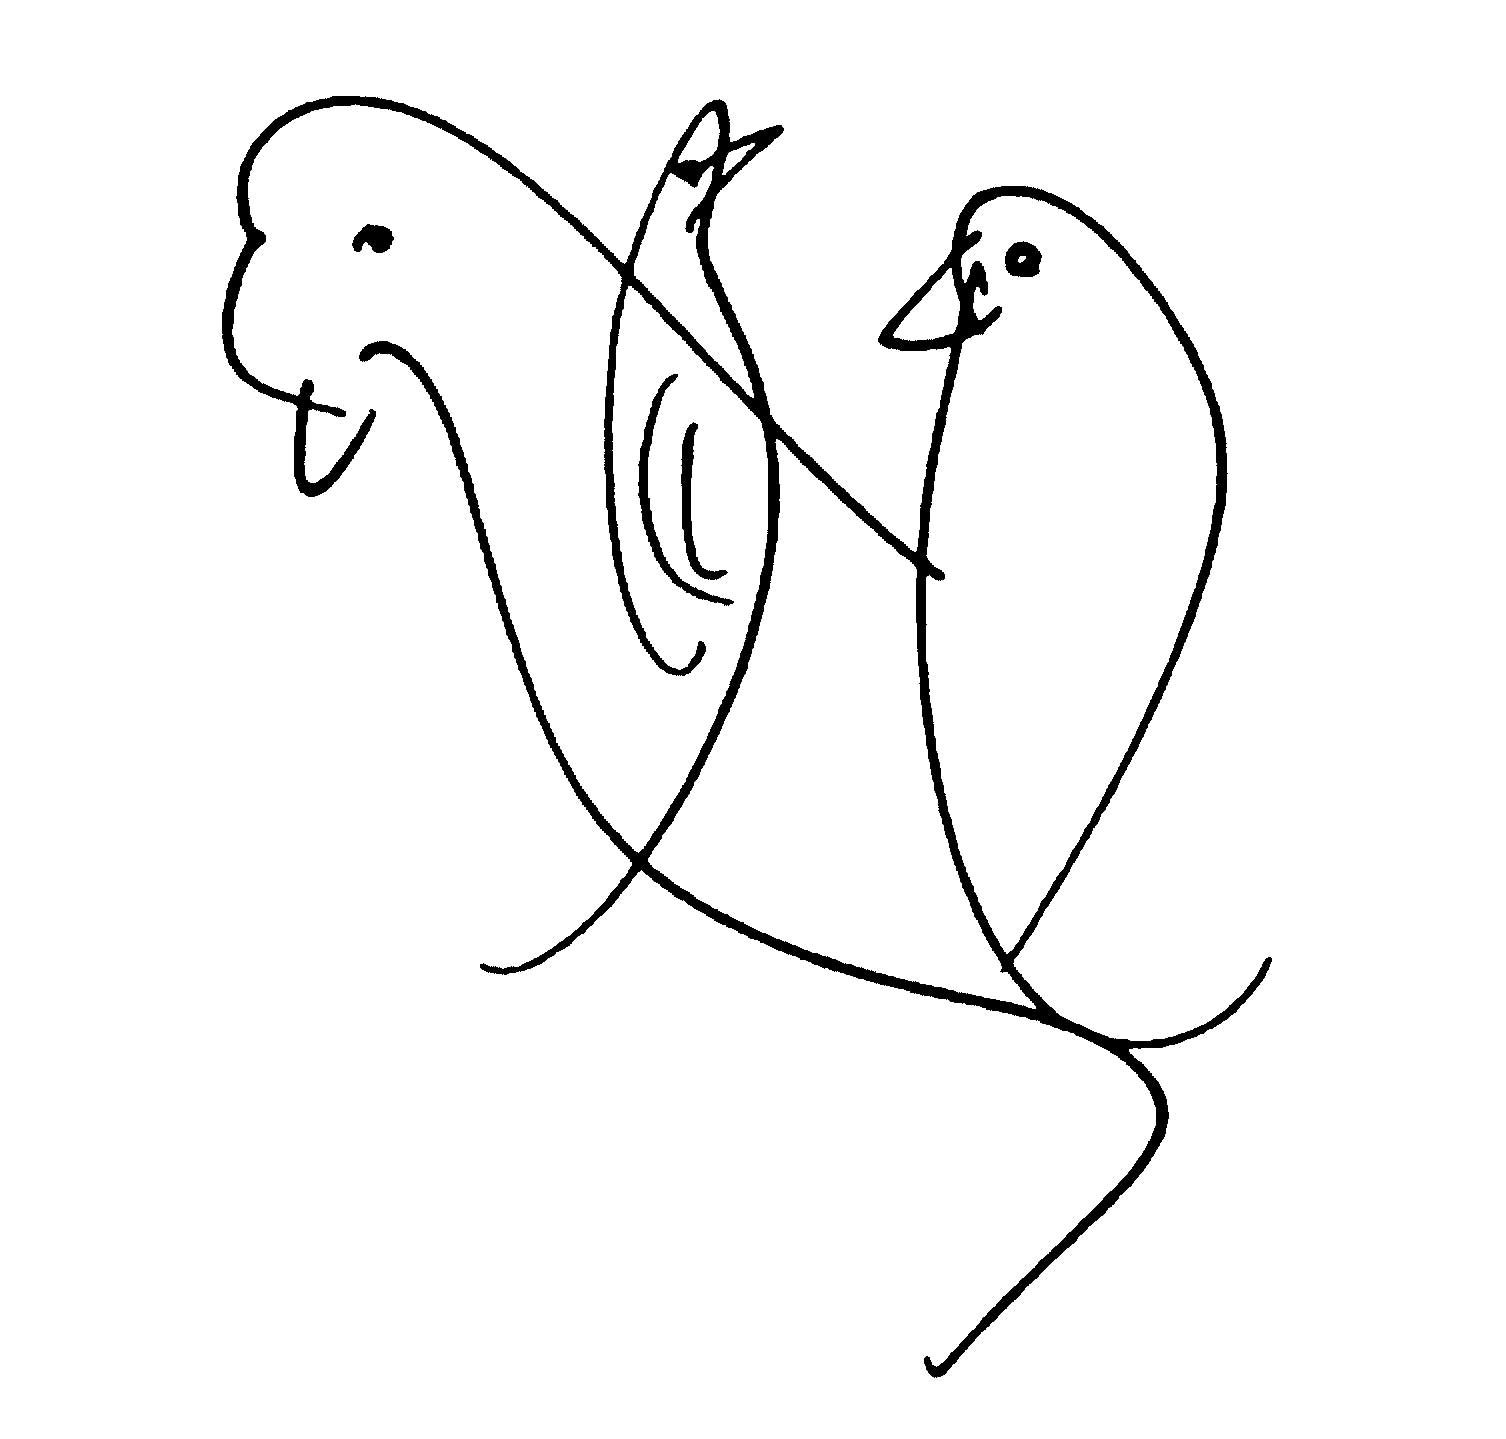 bird-drawing-by-sri-chinmoy-undated-396